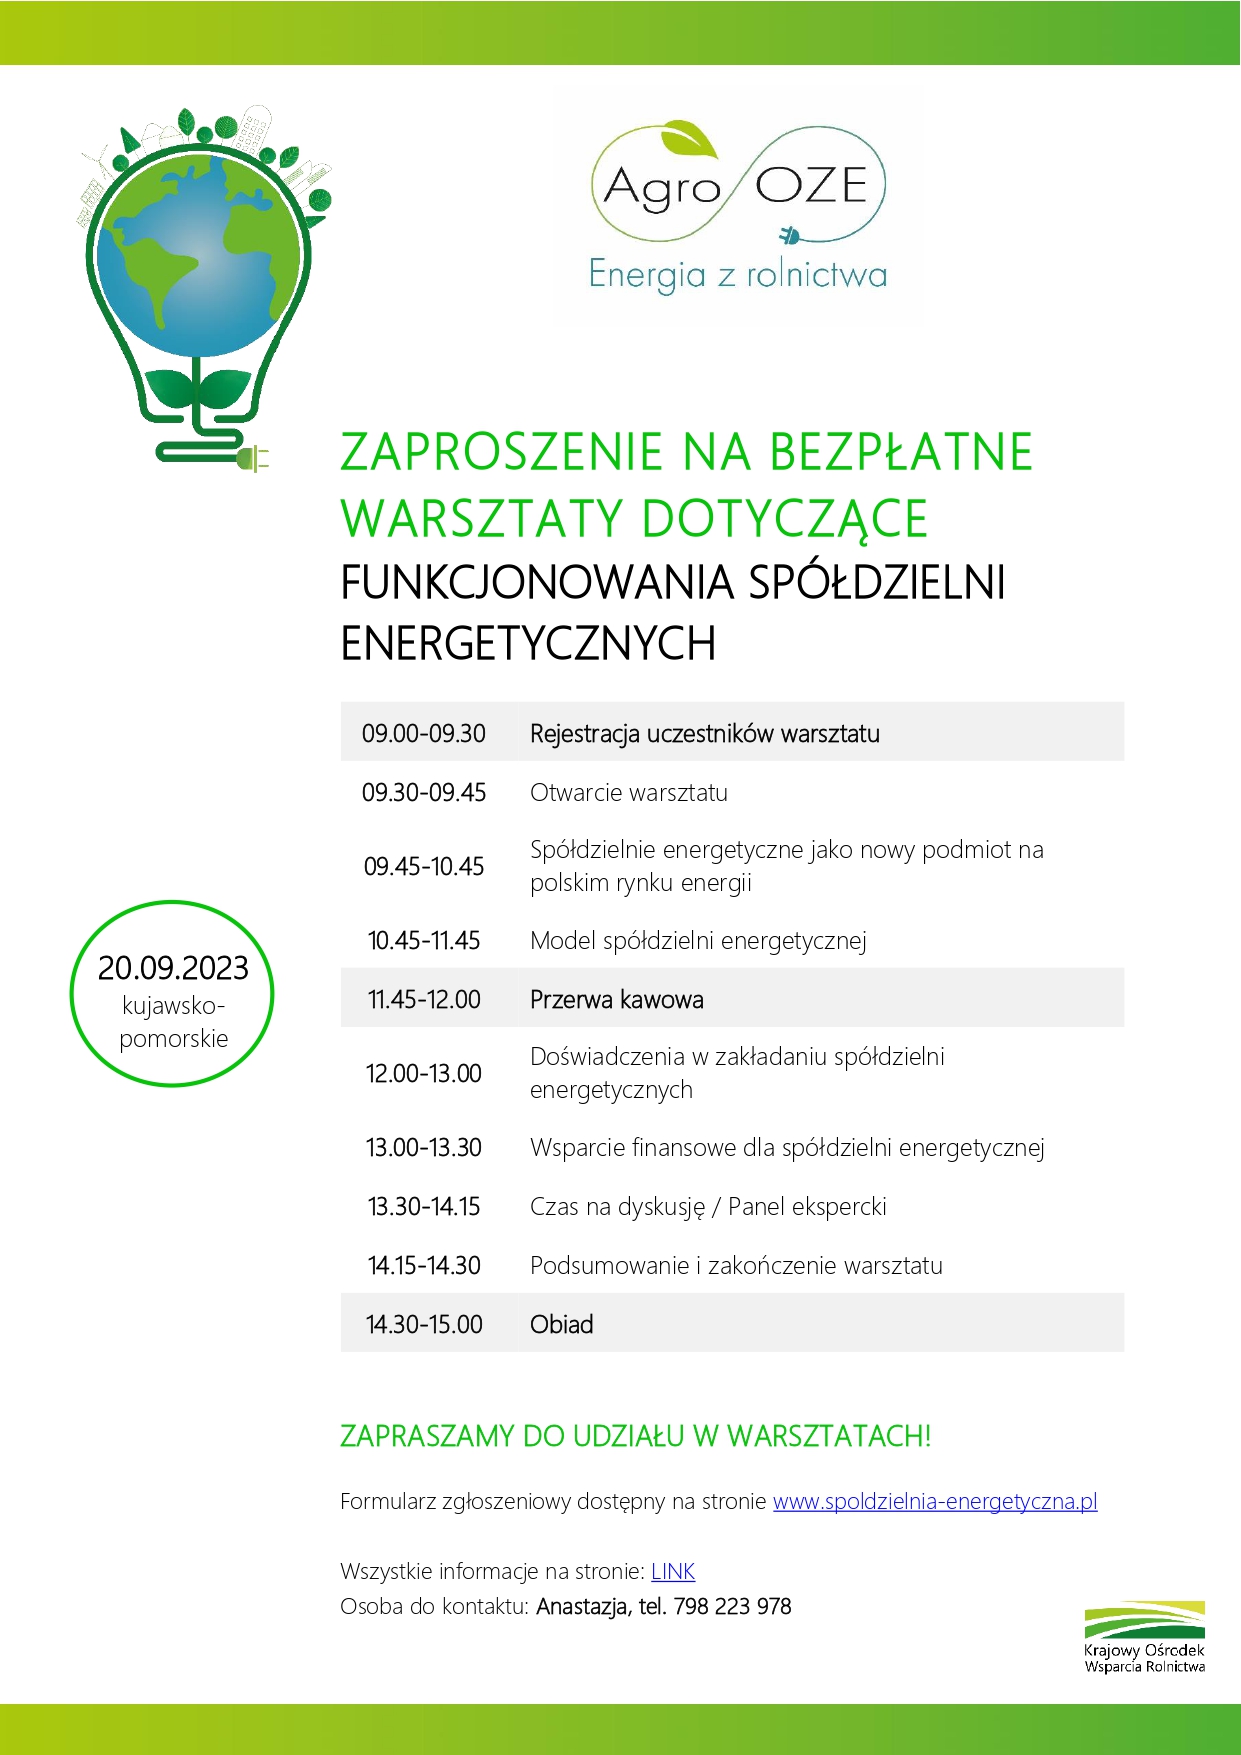 Zaproszenie na bezpłatne warsztaty dotyczące funkcjonowania spółdzielni energetycznych